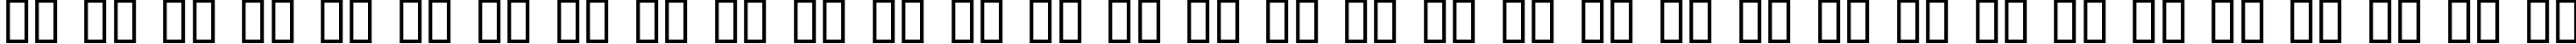 Пример написания русского алфавита шрифтом Square721 Dm Normal